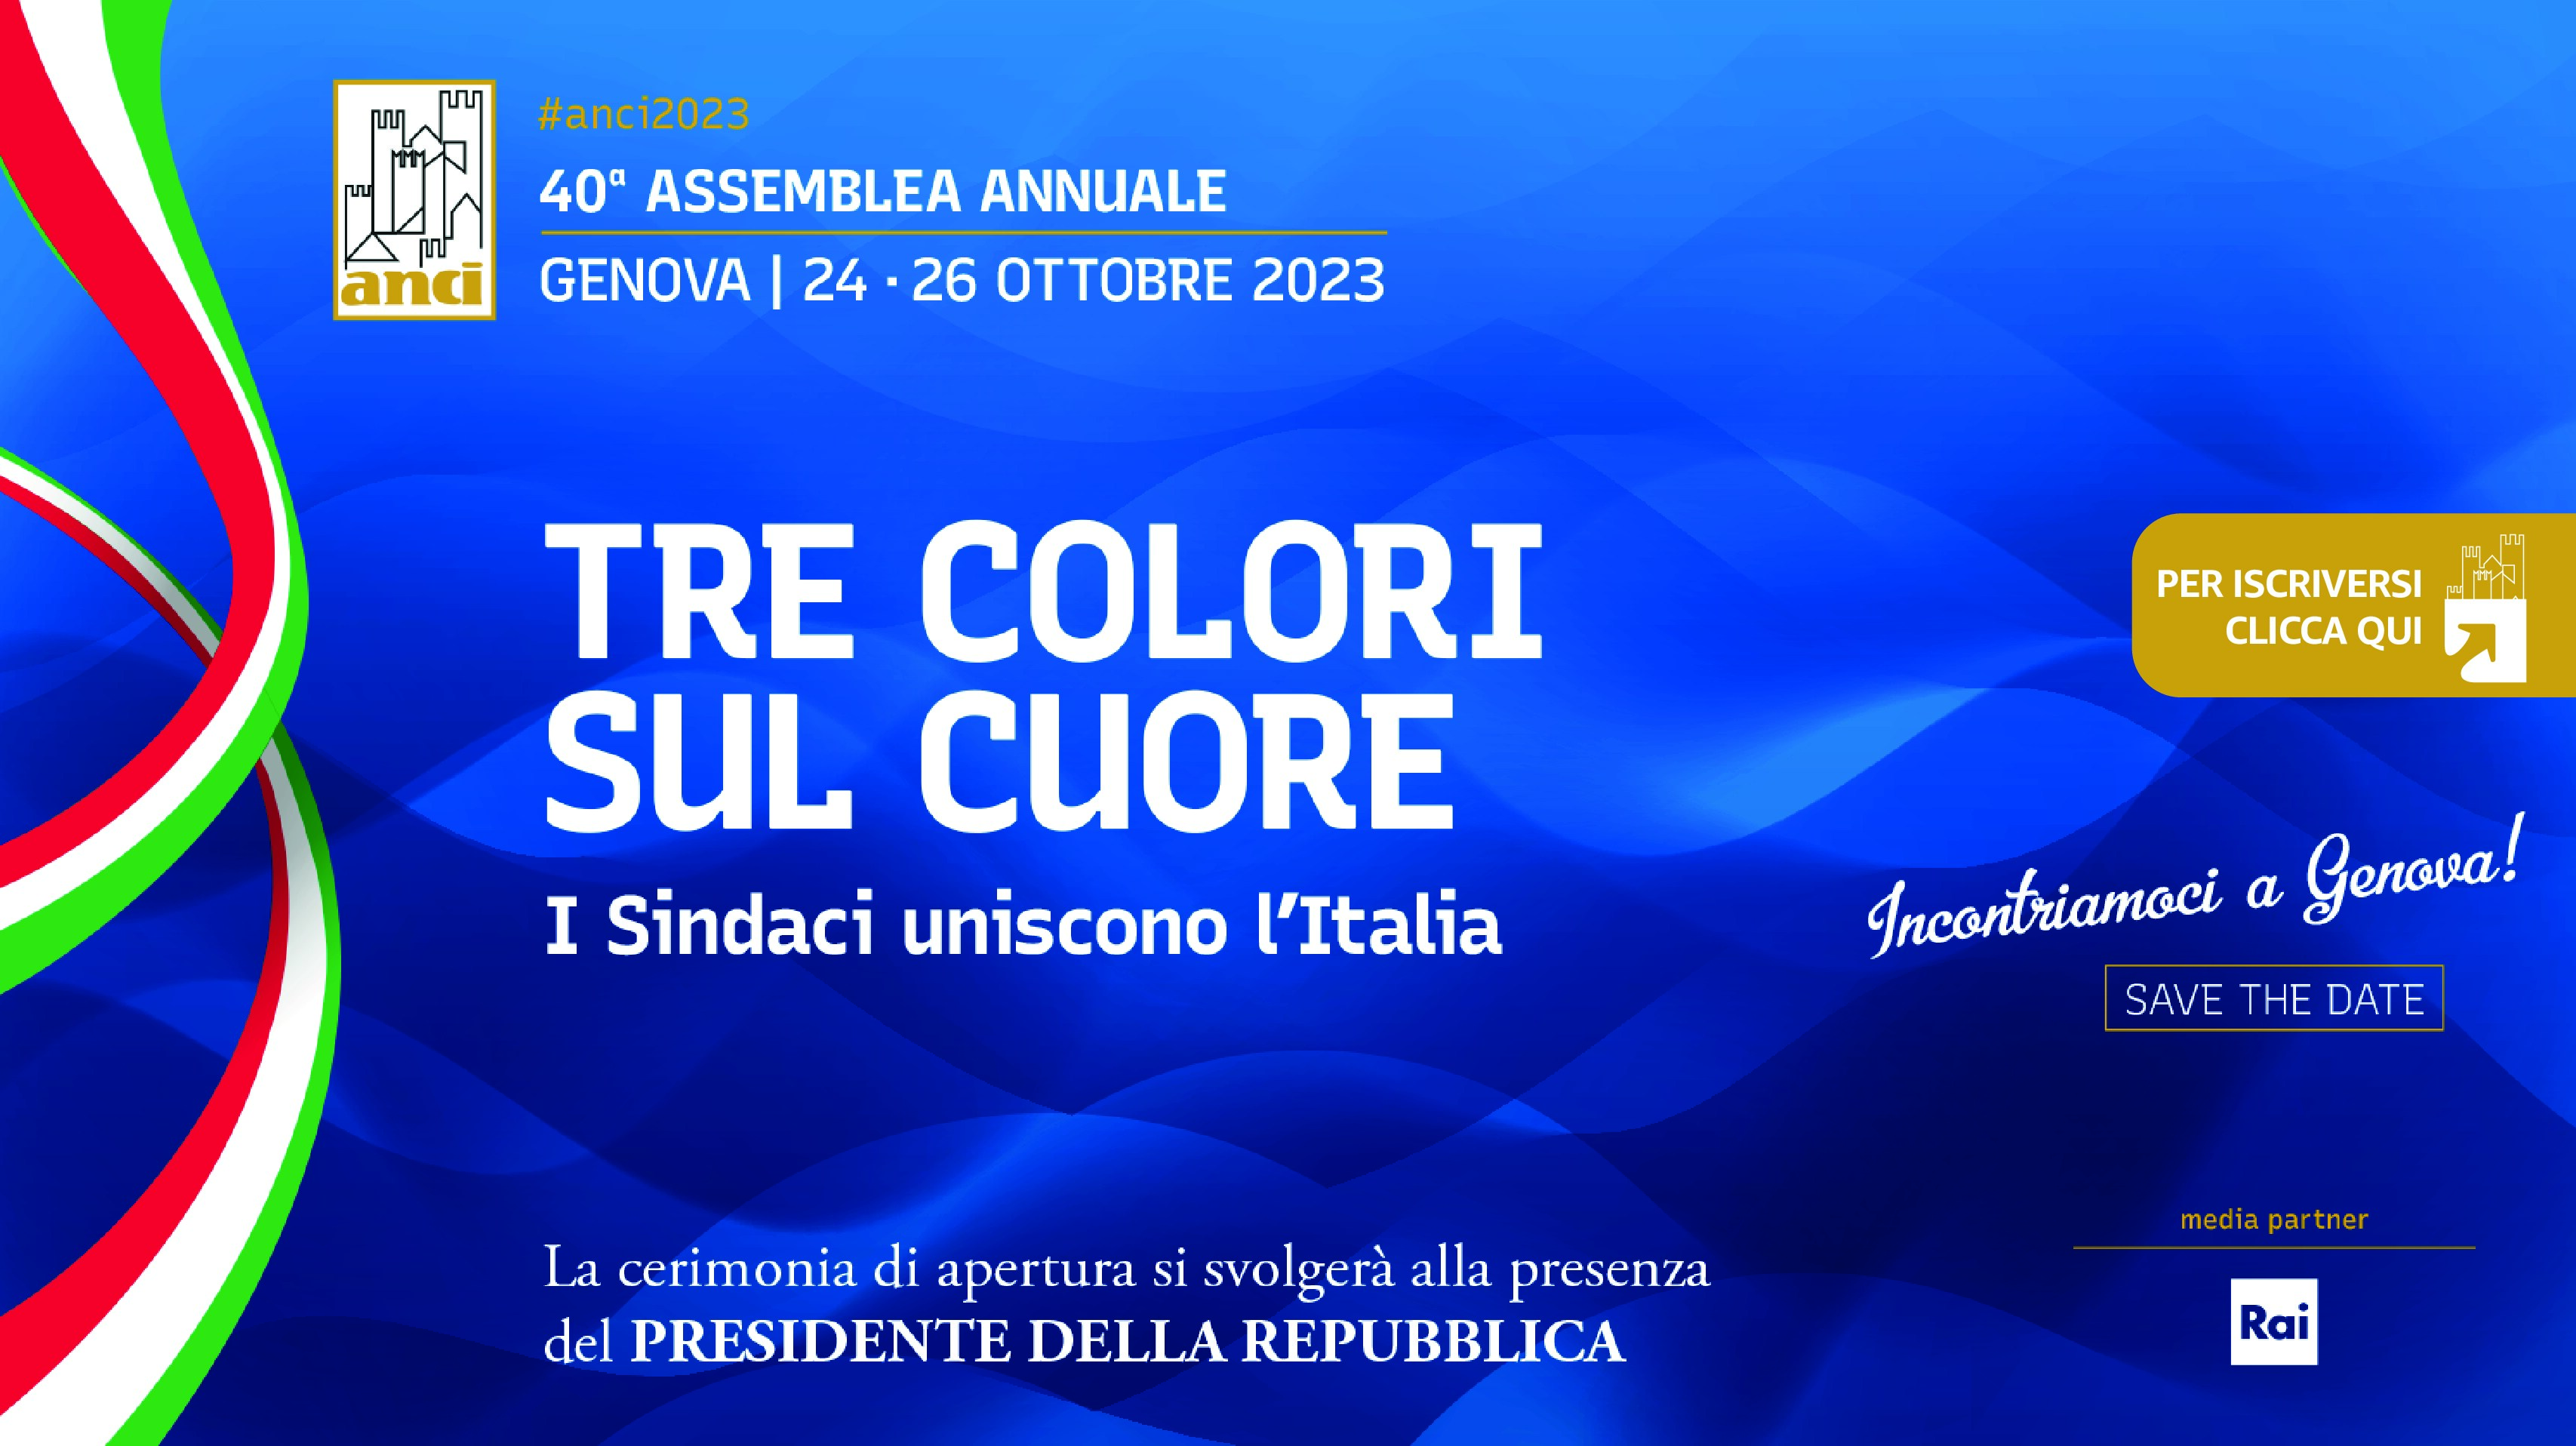 #Anci2023: Dal 24 al 26 ottobre alla Fiera di Genova la 40ª Assemblea annuale Anci